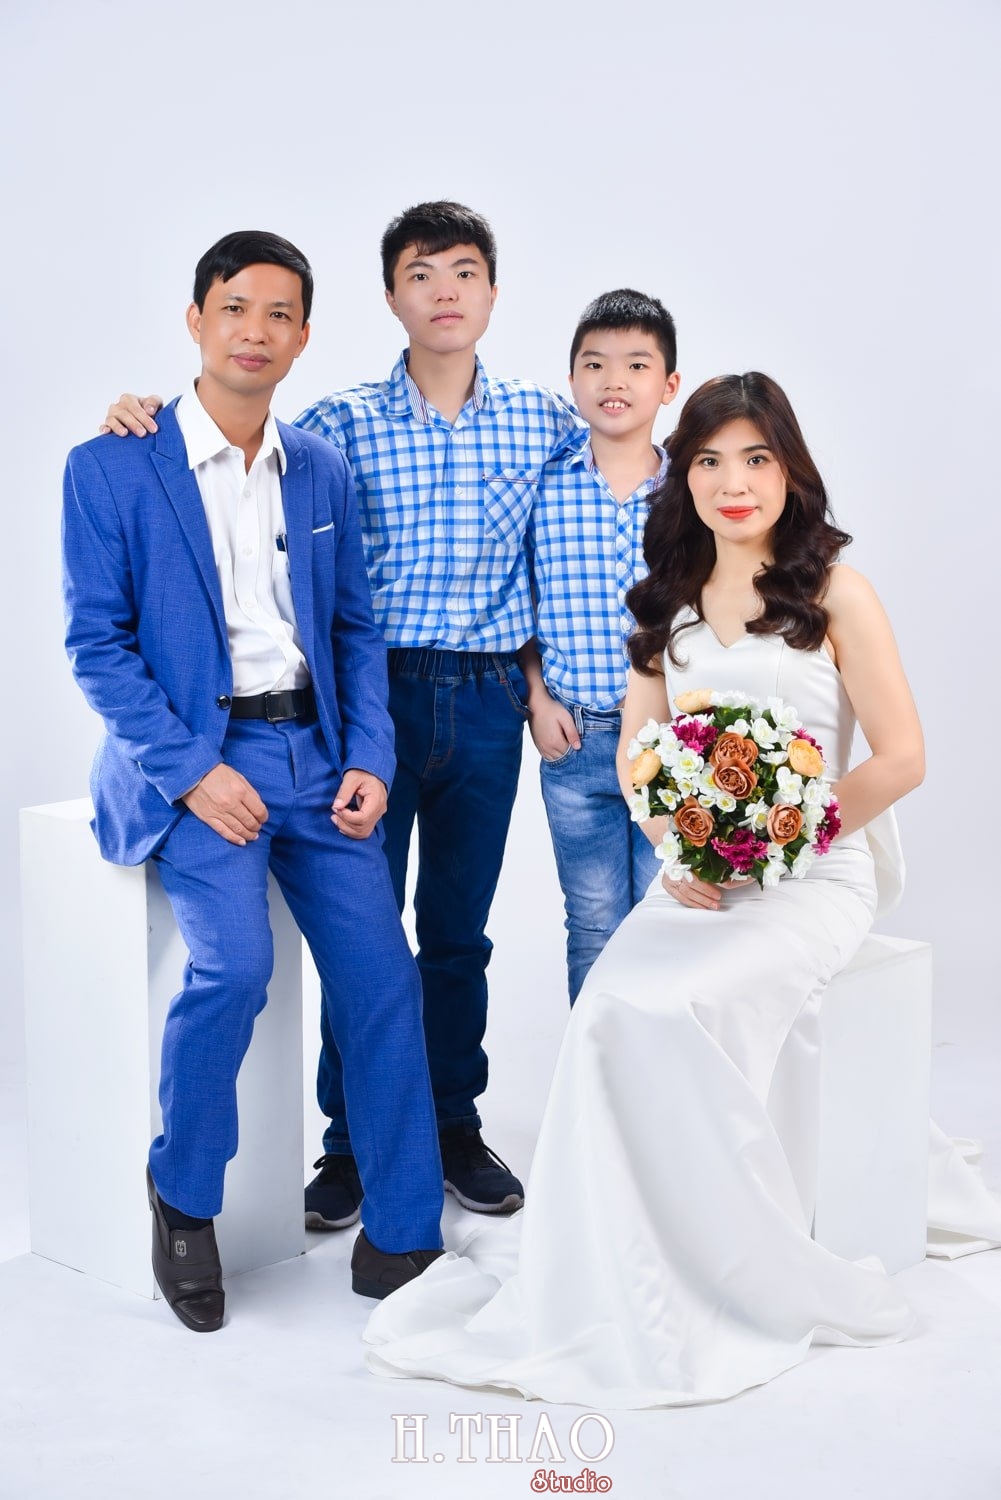 Anh gia dinh 4 nguoi 10 min - Chụp ảnh gia đình kiểu hàn quốc, concept & giá chụp tại Tp.HCM – HThao Studio